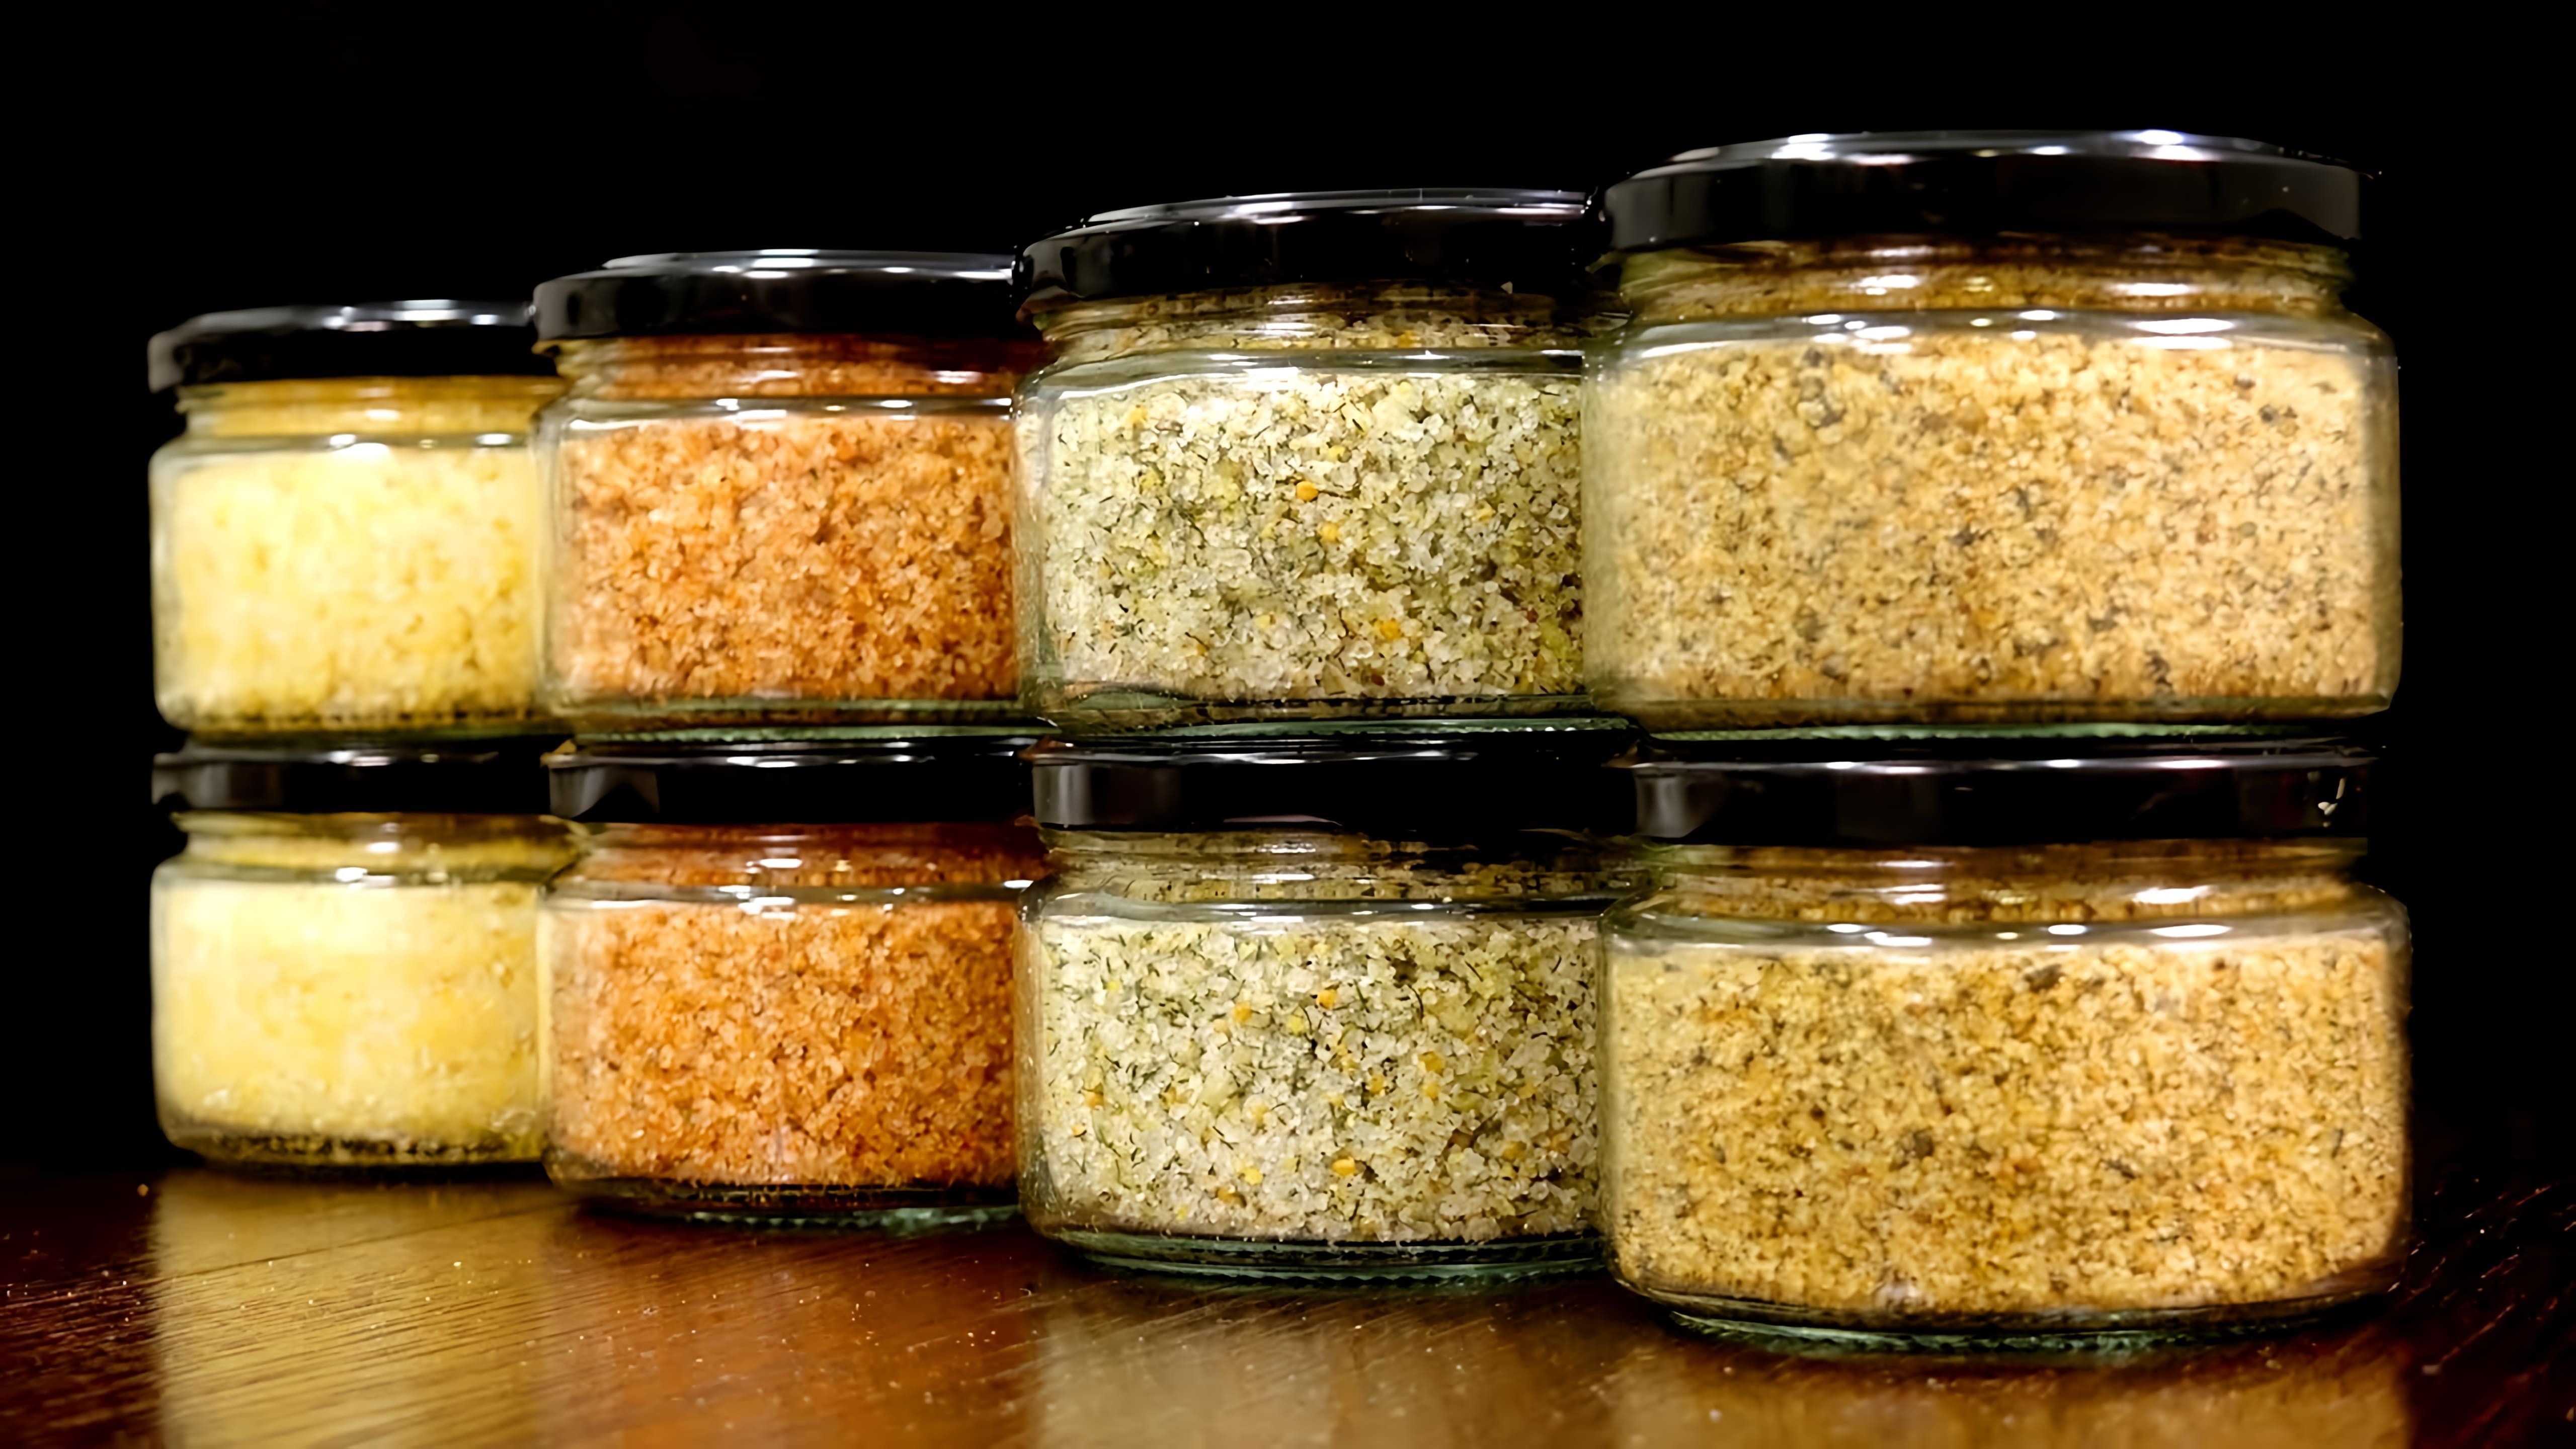 В этом видео рассказывается о различных видах соли, которые можно использовать в кулинарии